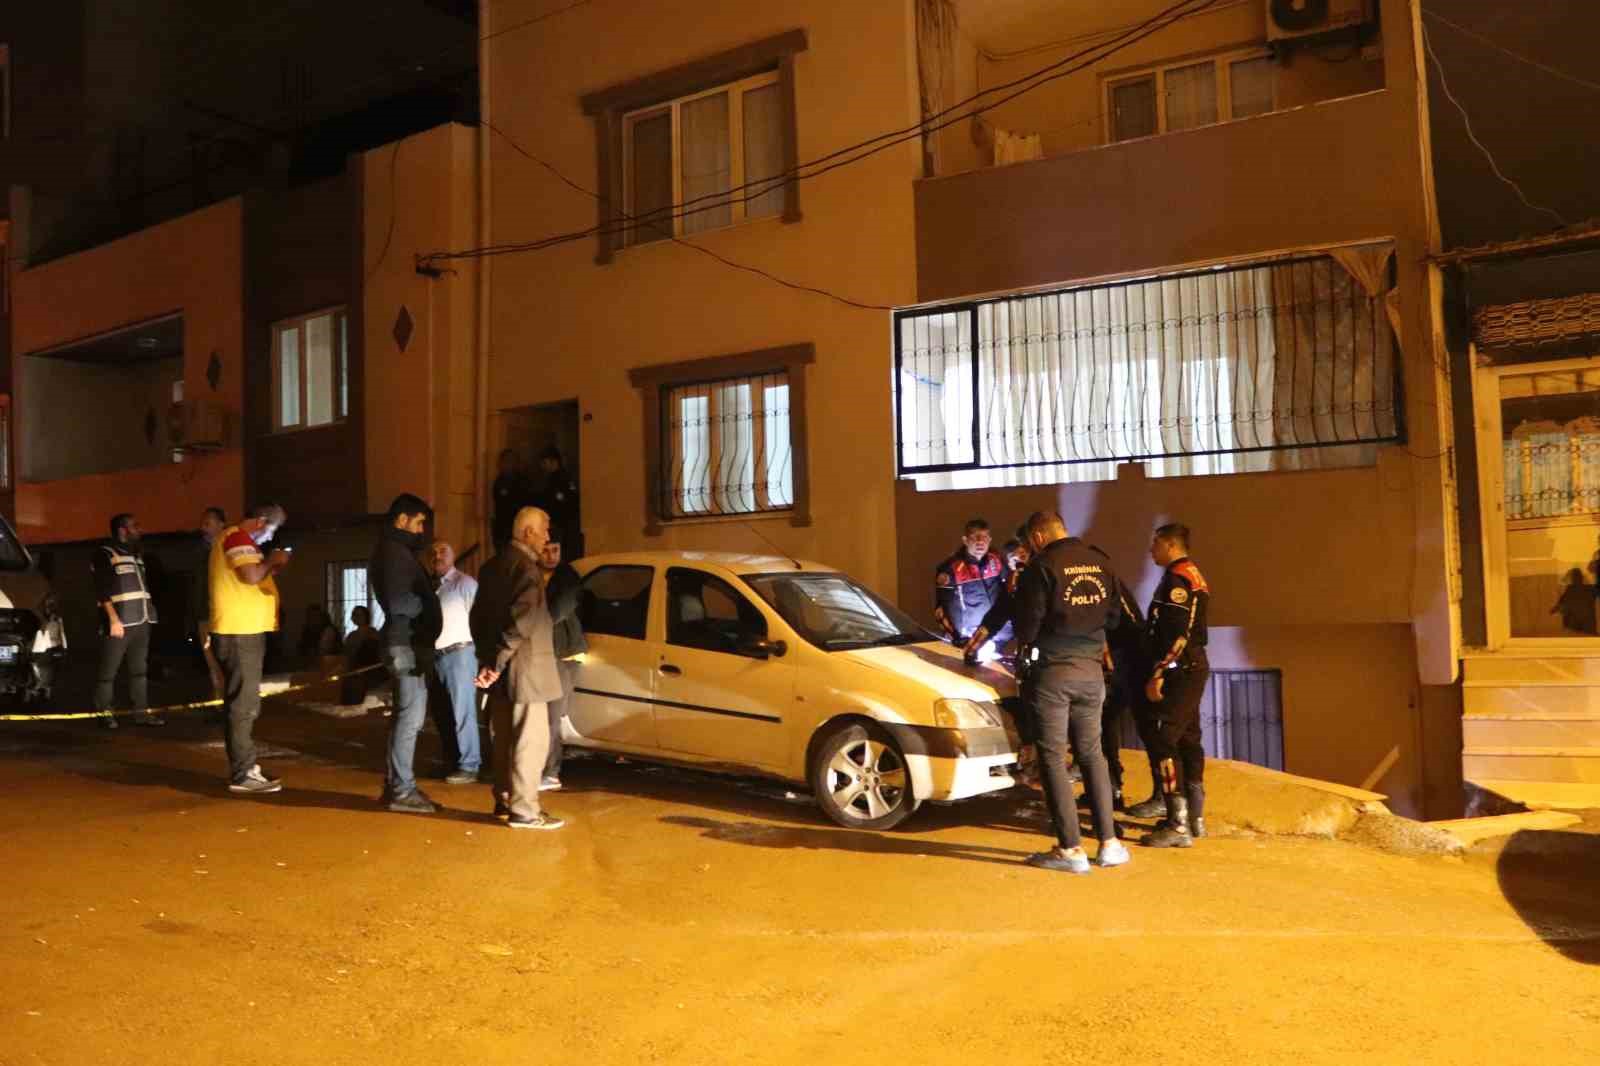 İzmir’de baba dehşeti: 1 kızını öldürdü, diğerini yaraladı